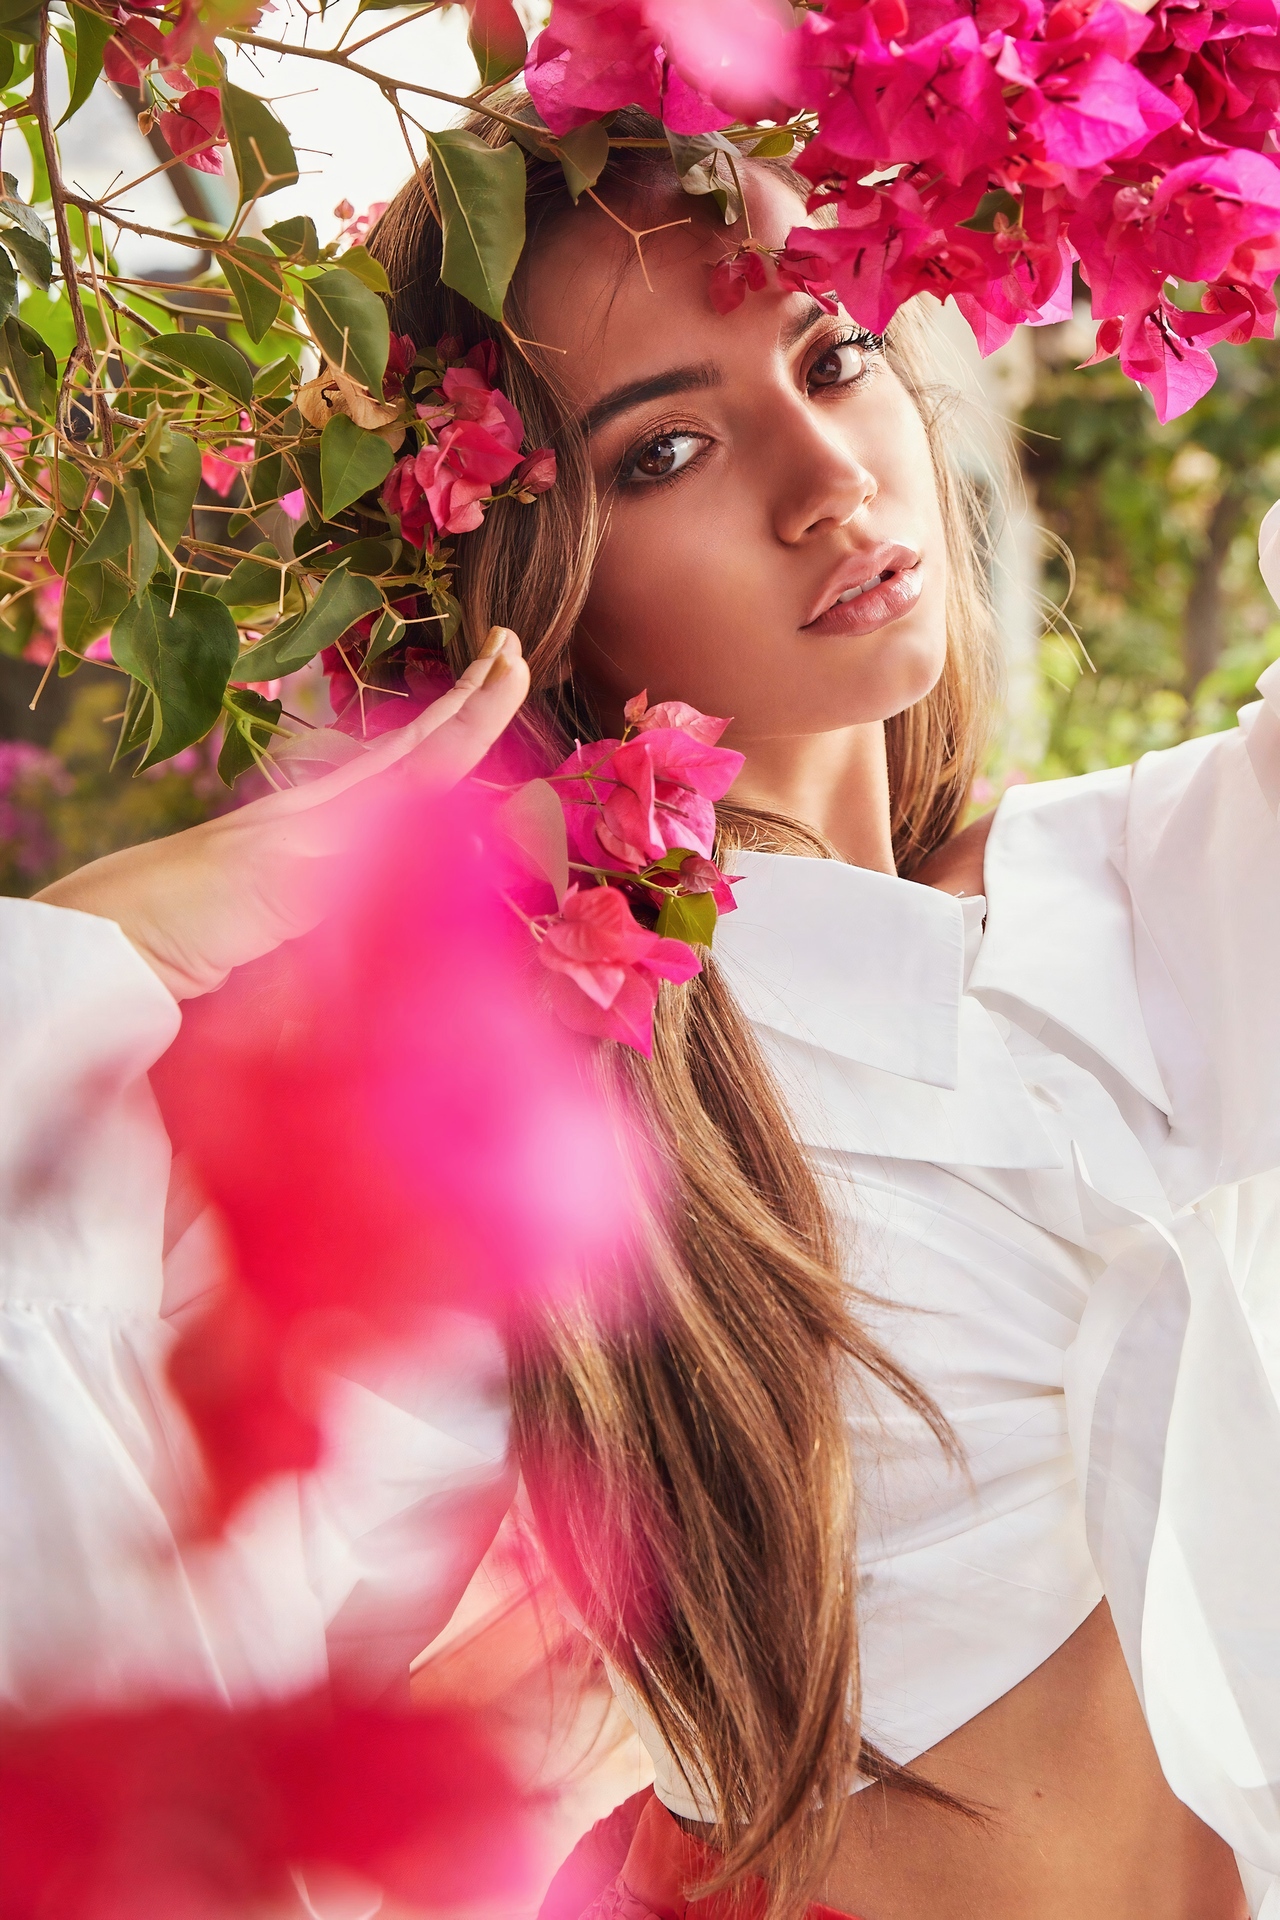 Isabela Merced Women Actress Latinas Peruvian Women Outdoors Sunlight Flowers Long Hair Brunette 1280x1920